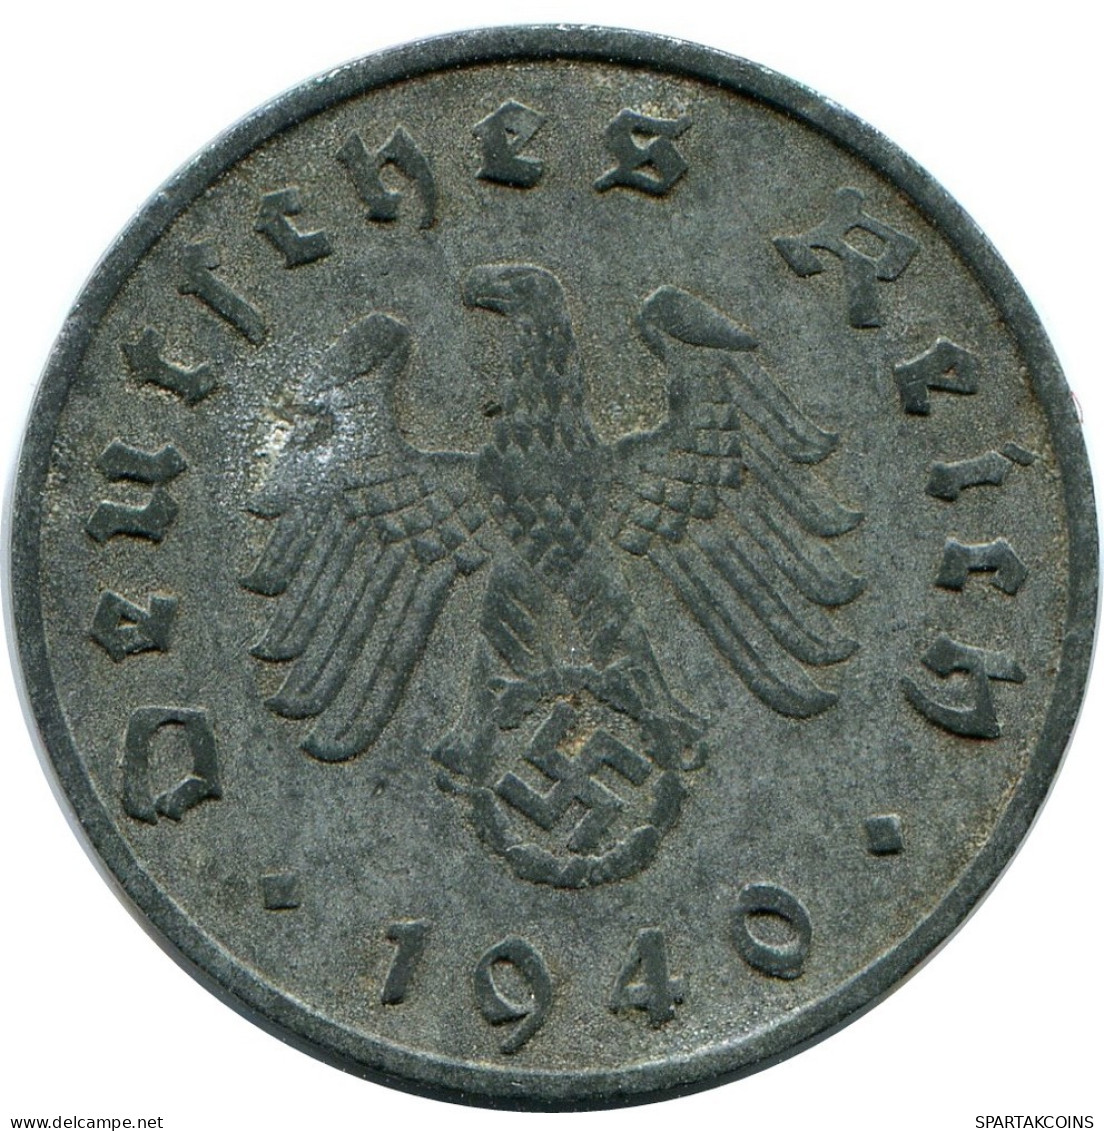 10 REICHSPFENNIG 1940 E DEUTSCHLAND Münze GERMANY #DB952.D.A - 10 Reichspfennig